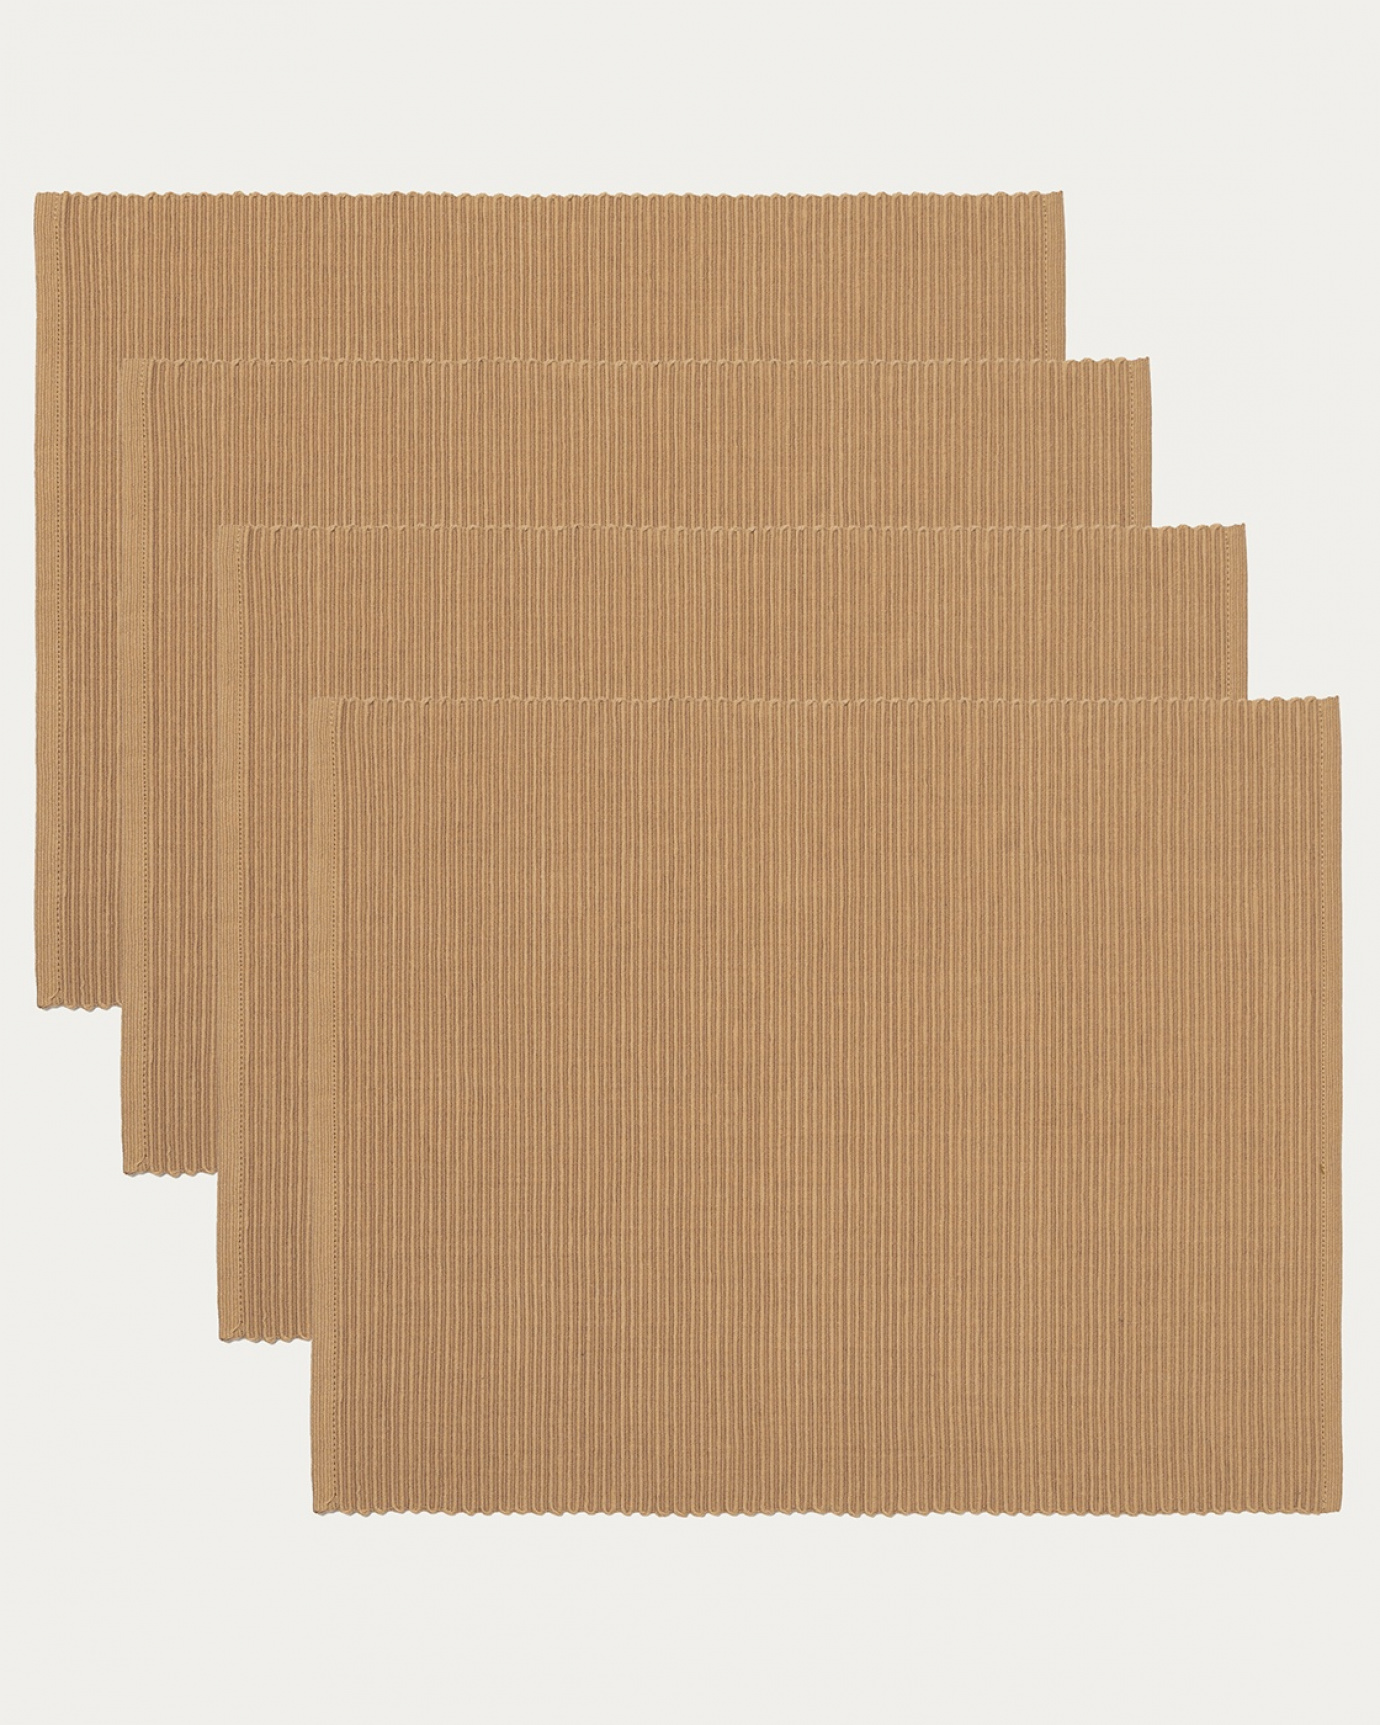 Produktbild kamelbrun UNI bordstablett av mjuk bomull i ribbad kvalité från LINUM DESIGN. Storlek 35x46 cm och säljs i 4-pack.